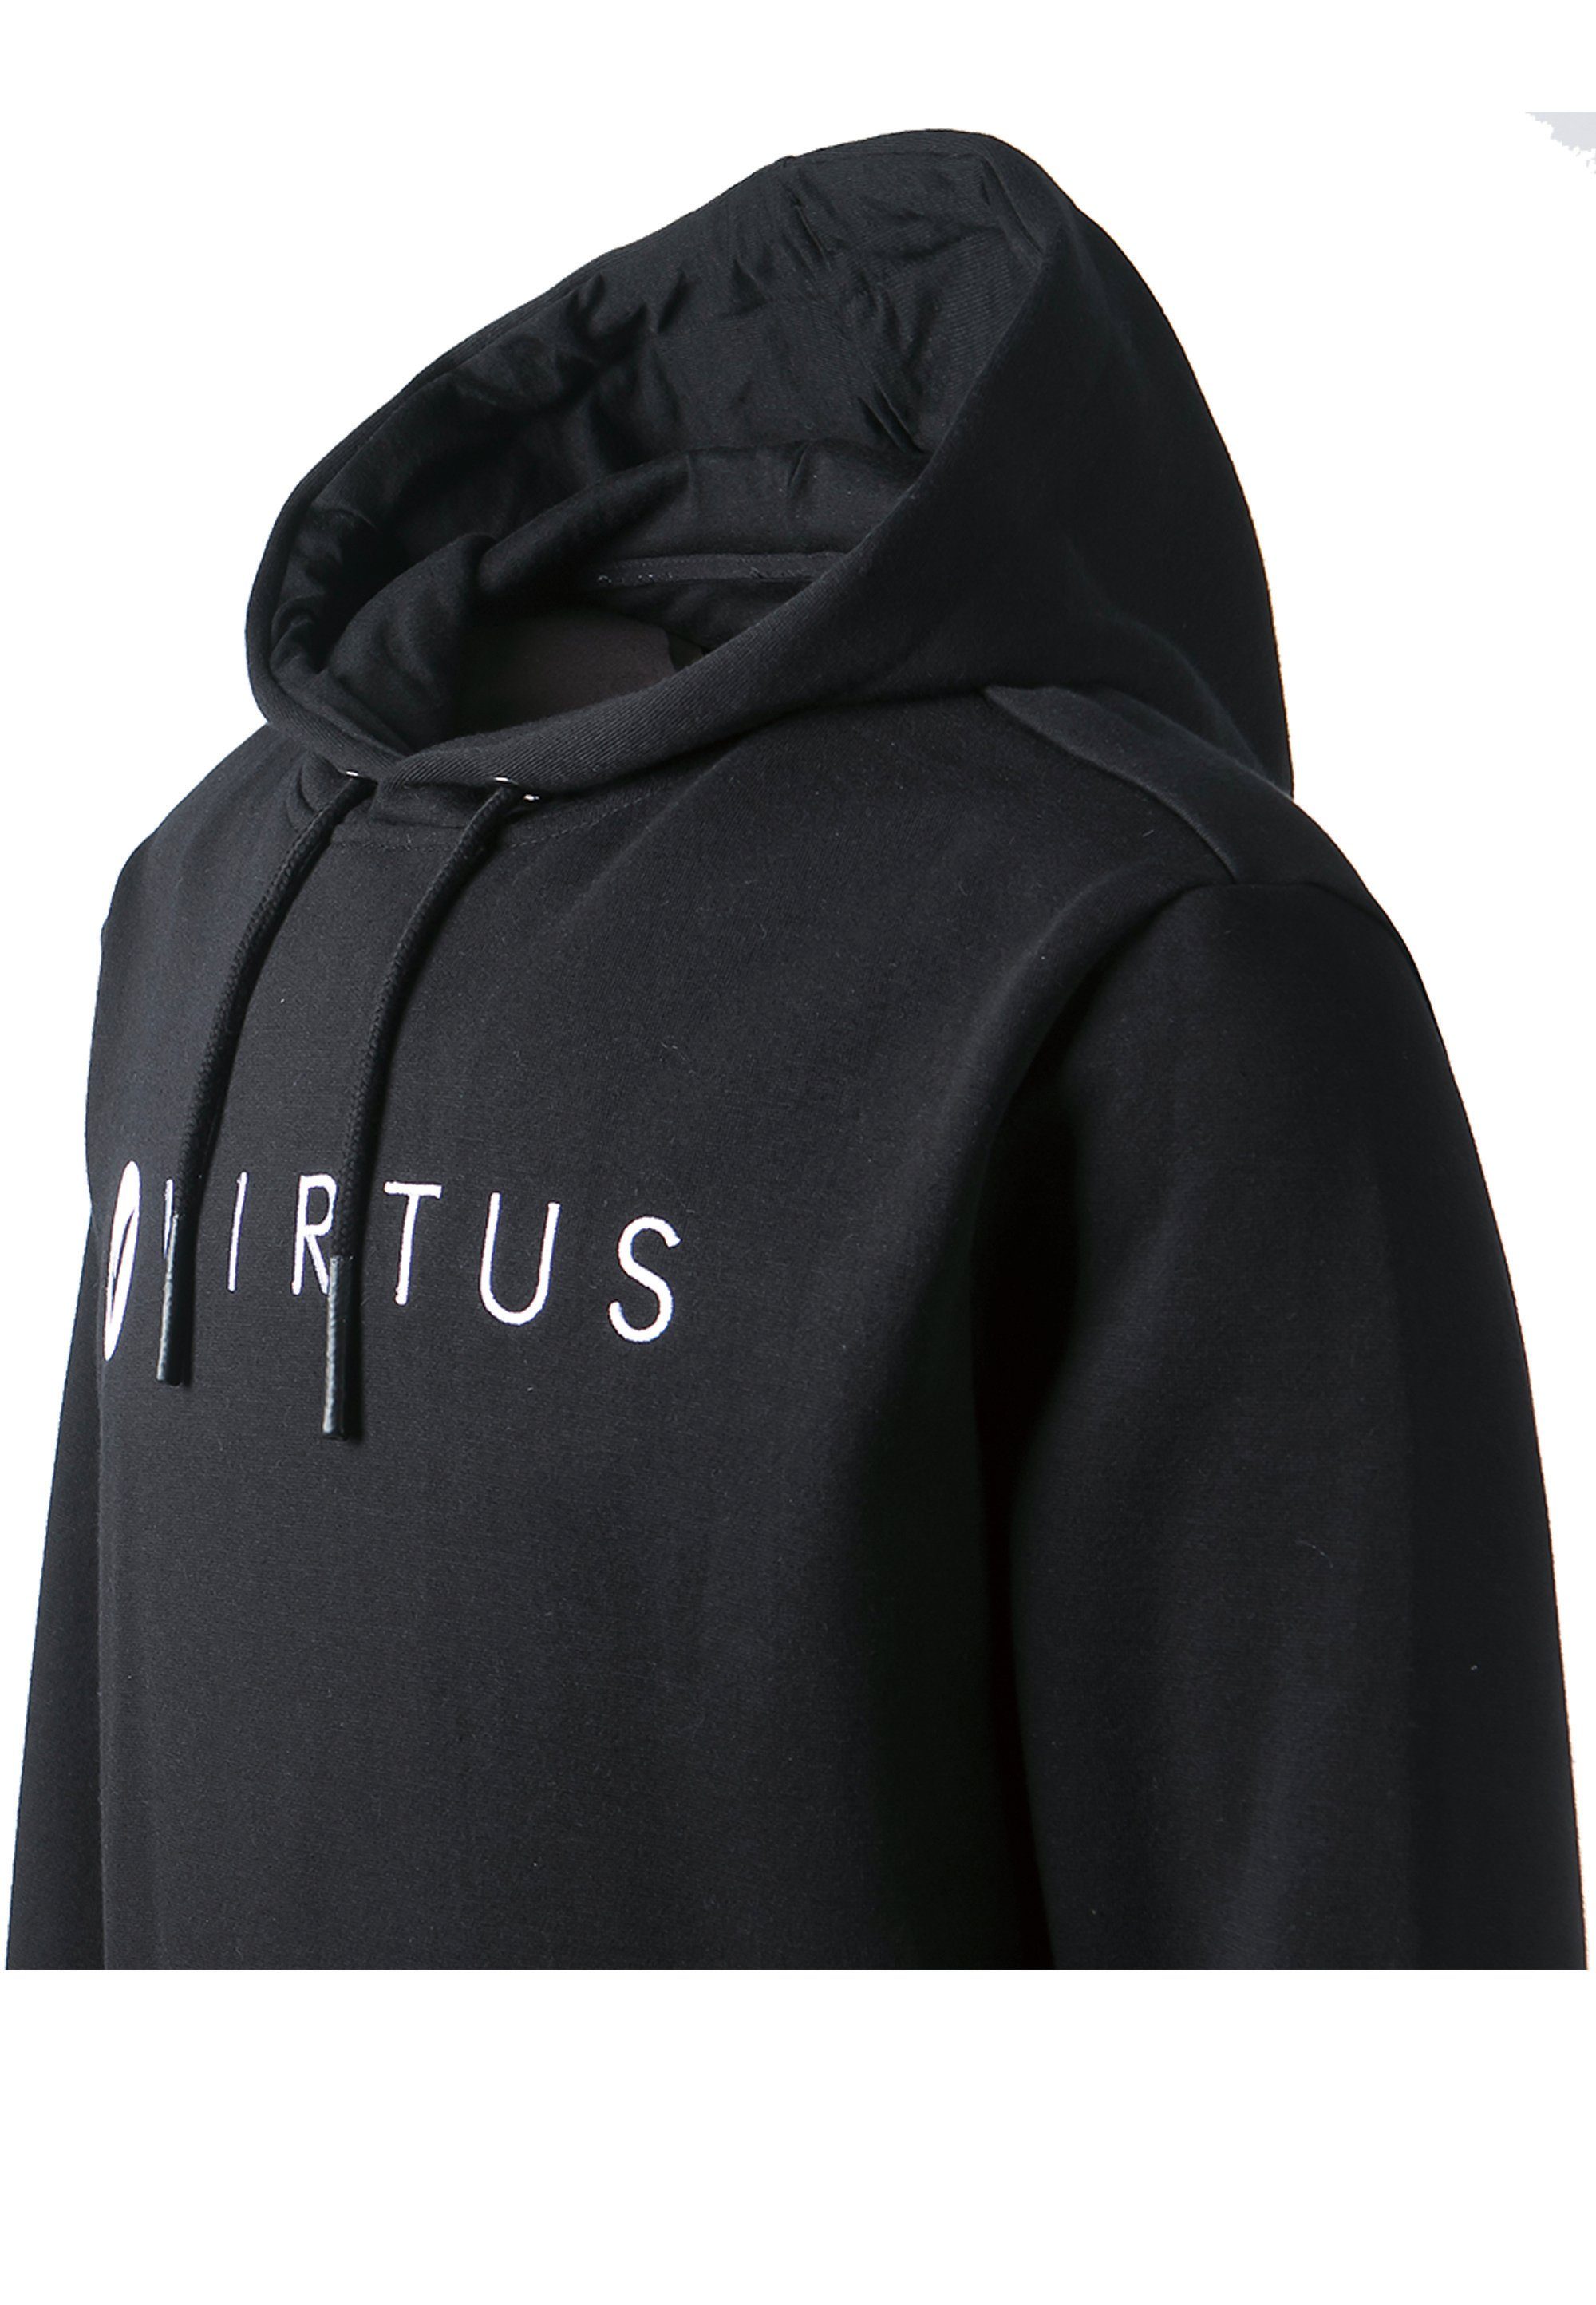 Matis Virtus Kapuzensweatshirt coolem schwarz Markenprint V2 mit